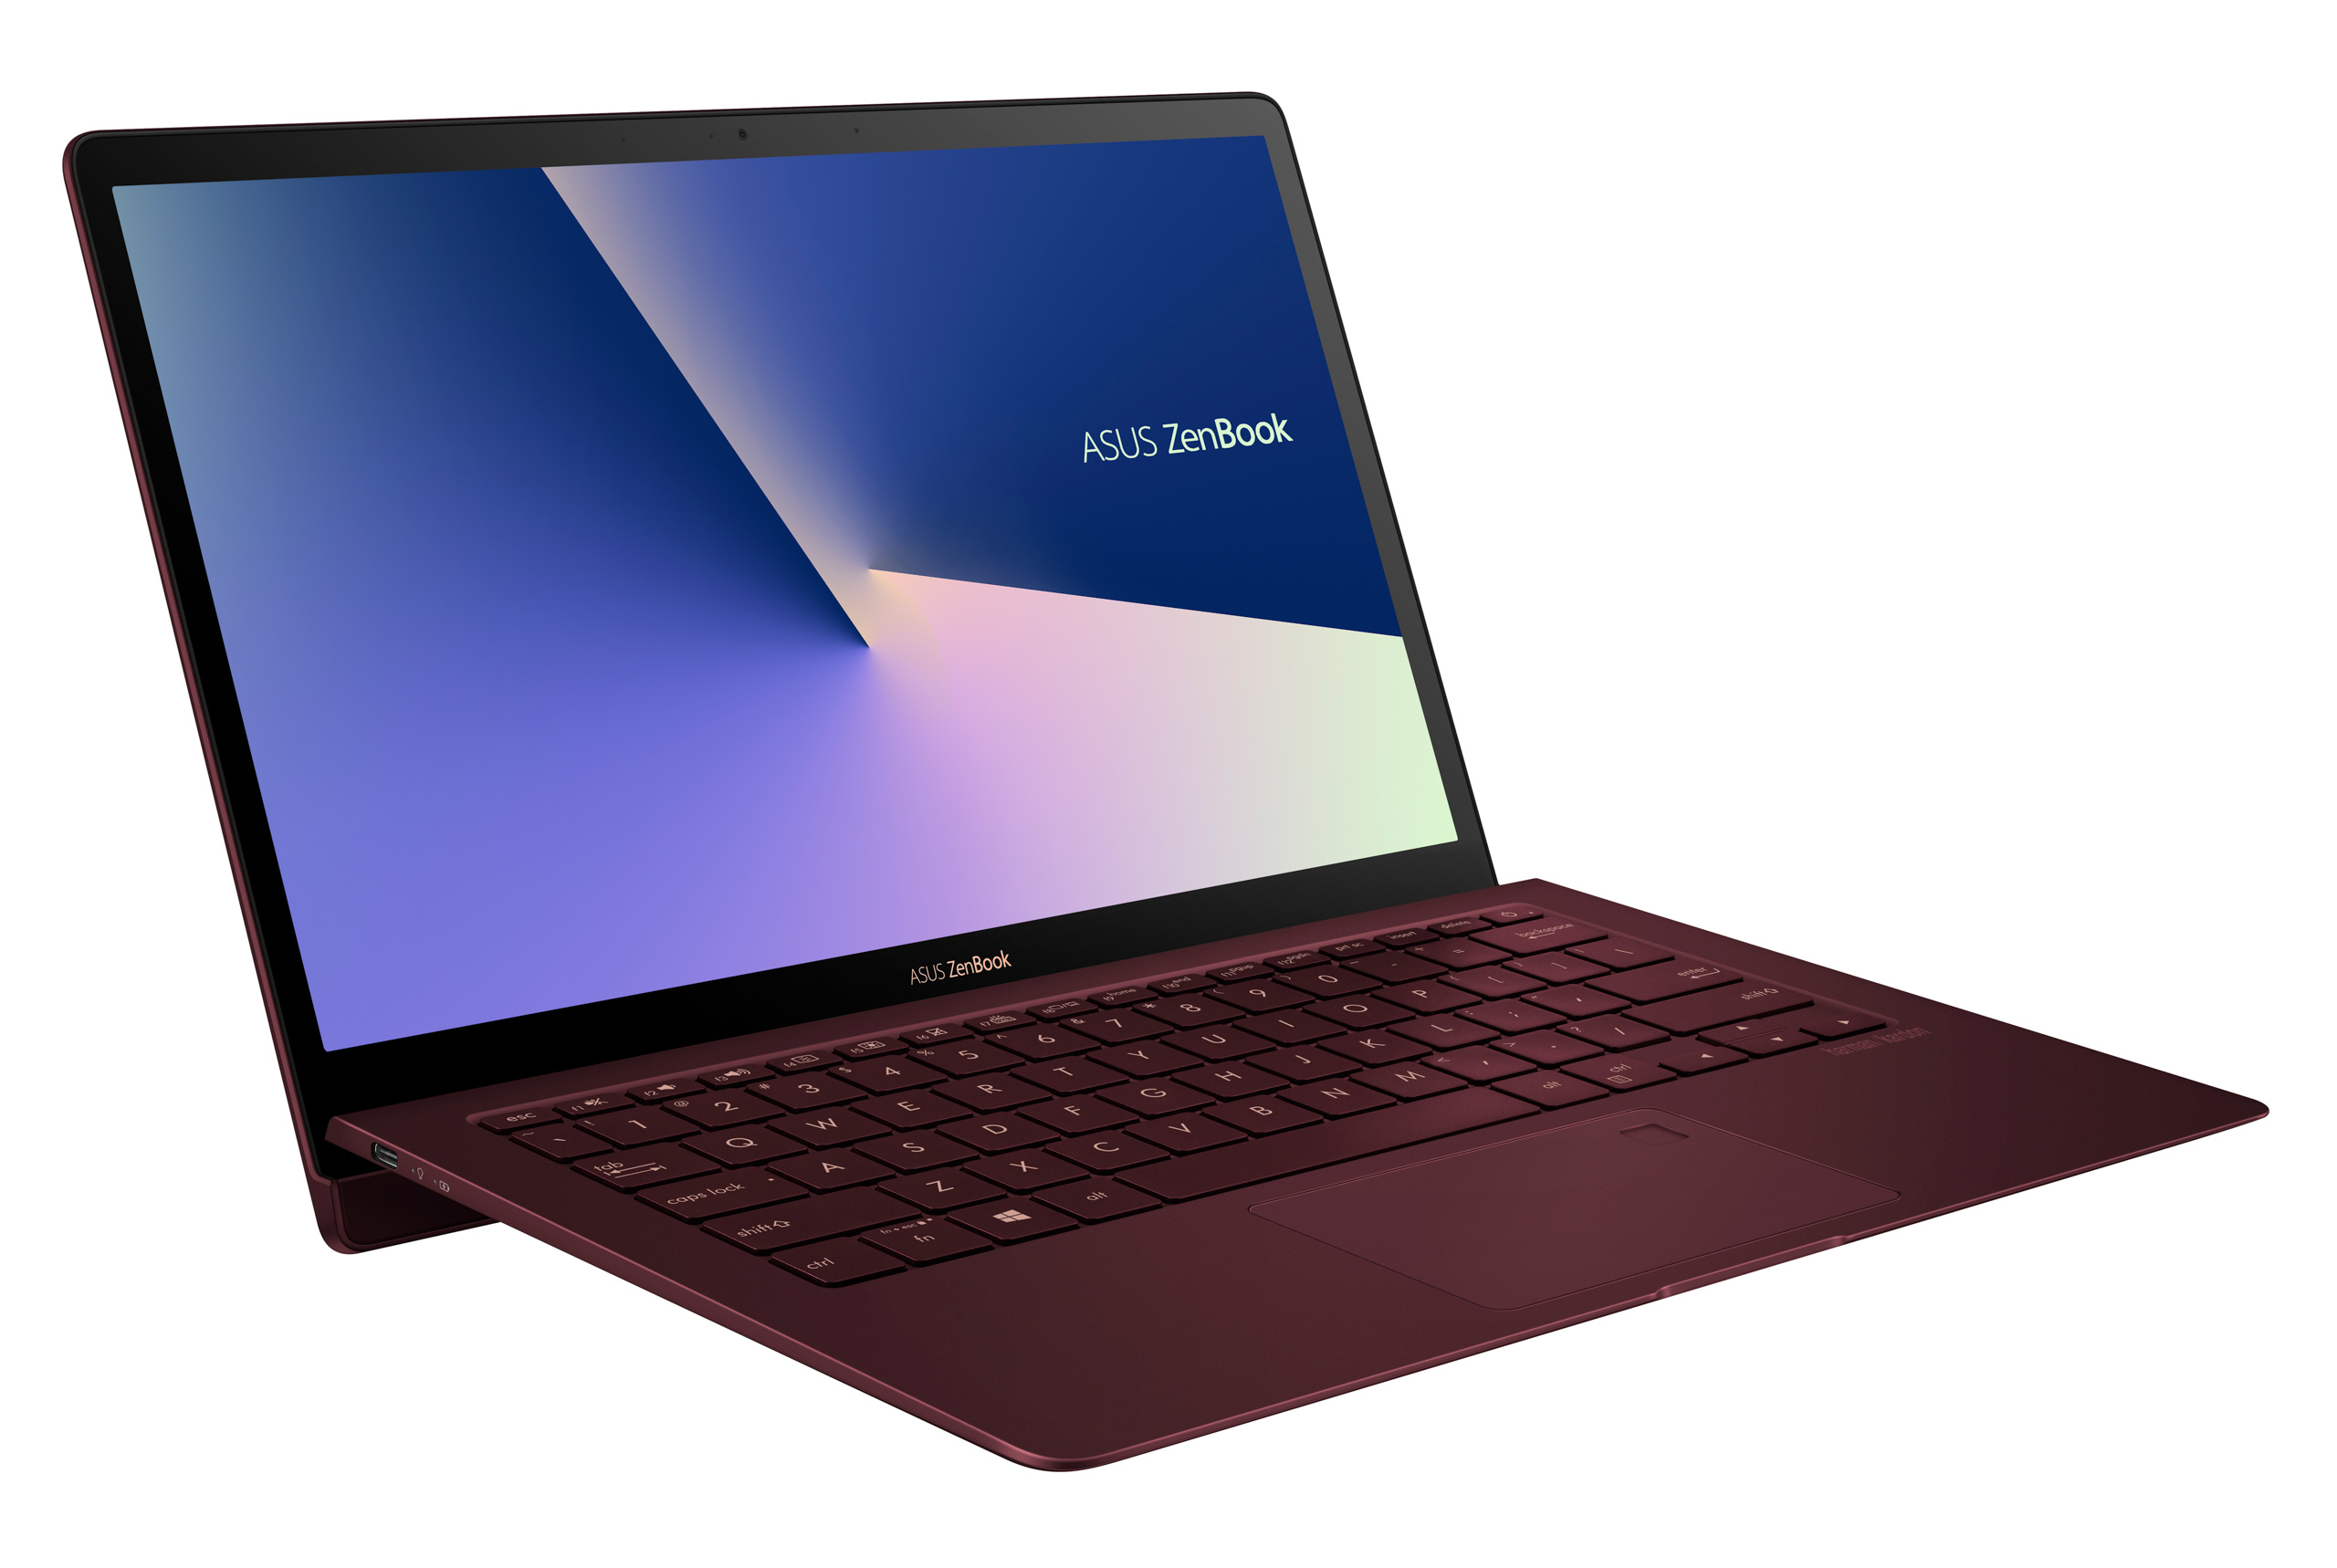 ASUS giới thiệu dòng sản phẩm ZenBook và Vivobook mới, dự án Concept PC tại Computex 2018